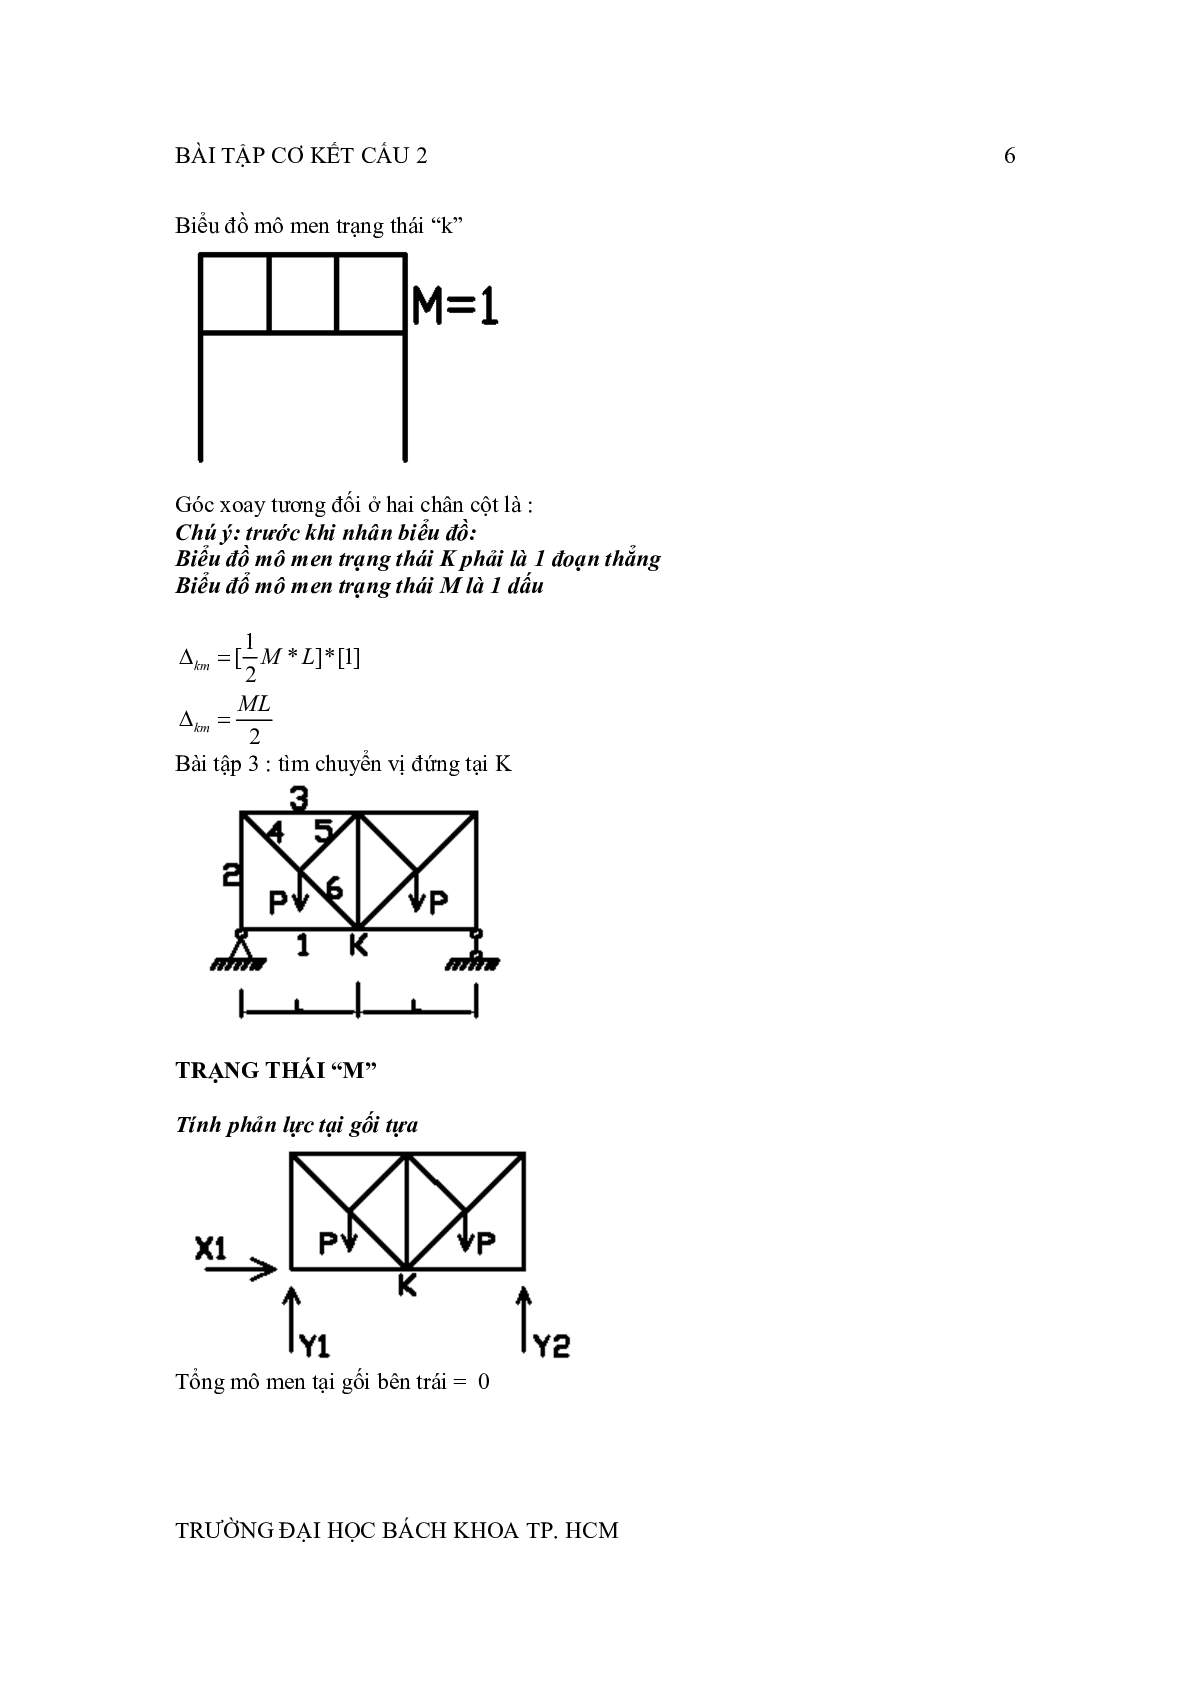 Ngân hàng bài tập Cơ kết cấu 2 (có lời giải) | Đại học Bách Khoa Thành Phố Hồ Chí Minh (trang 6)